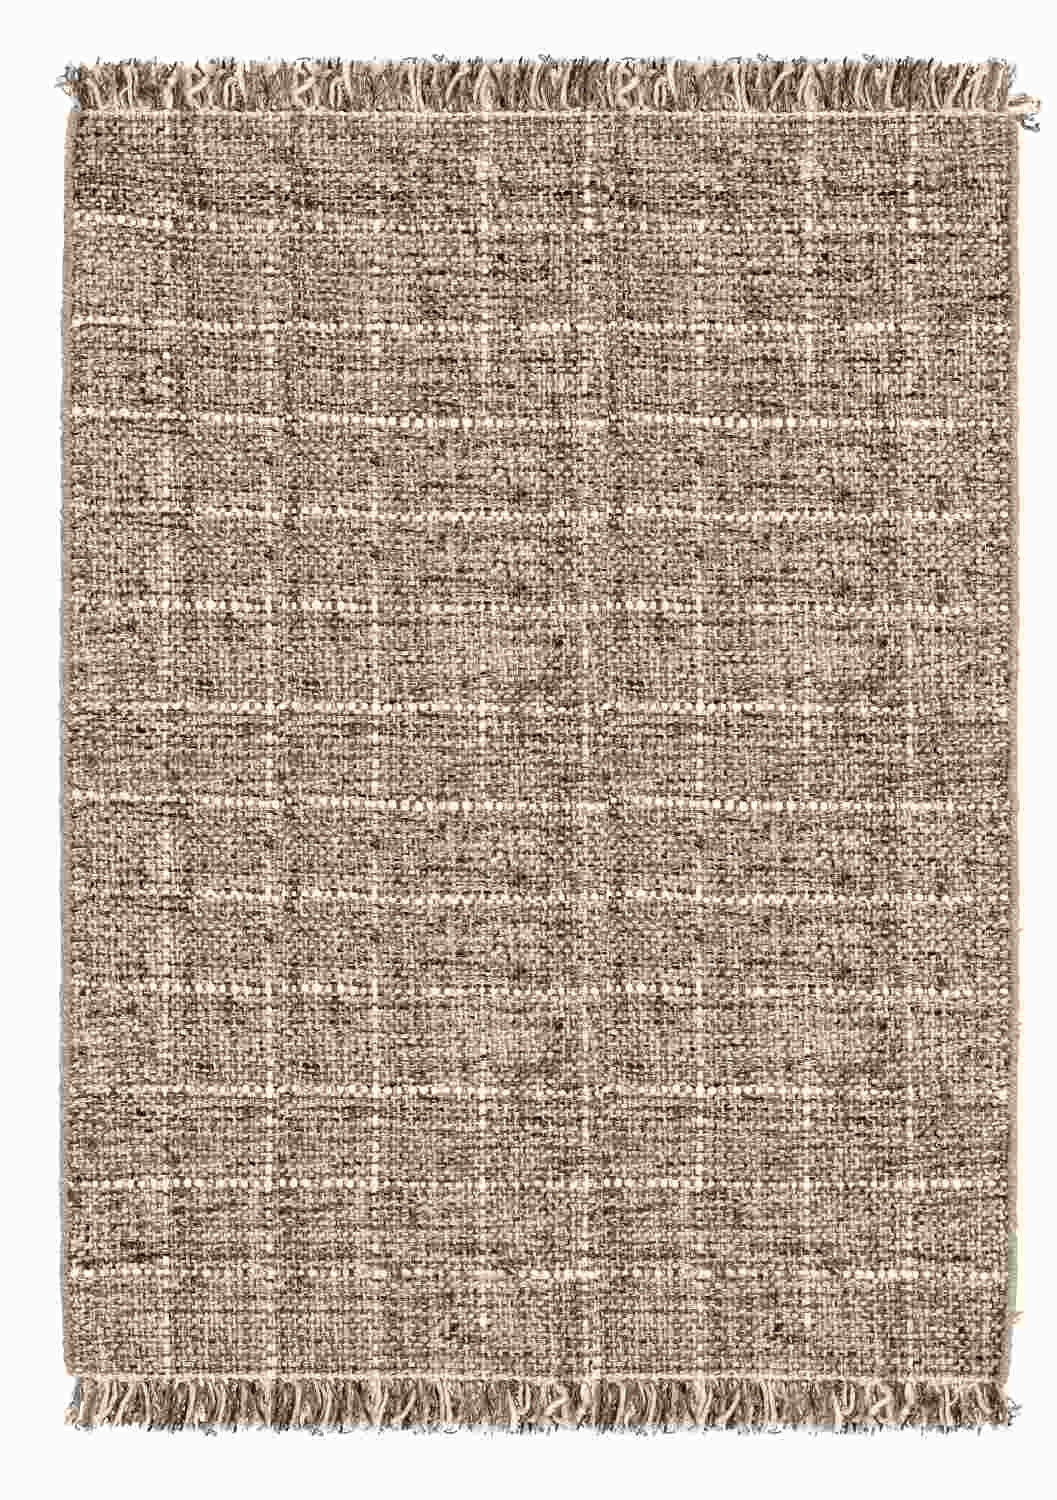 Der Teppich Senuri überzeugt mit seinem klassischen Design. Gefertigt wurde die Vorderseite aus 70% Polyester und 30% Wolle, die Rückseite ist aus Baumwolle. Der Teppich besitzt eine braunen Farbton und die Maße von 160x230 cm.